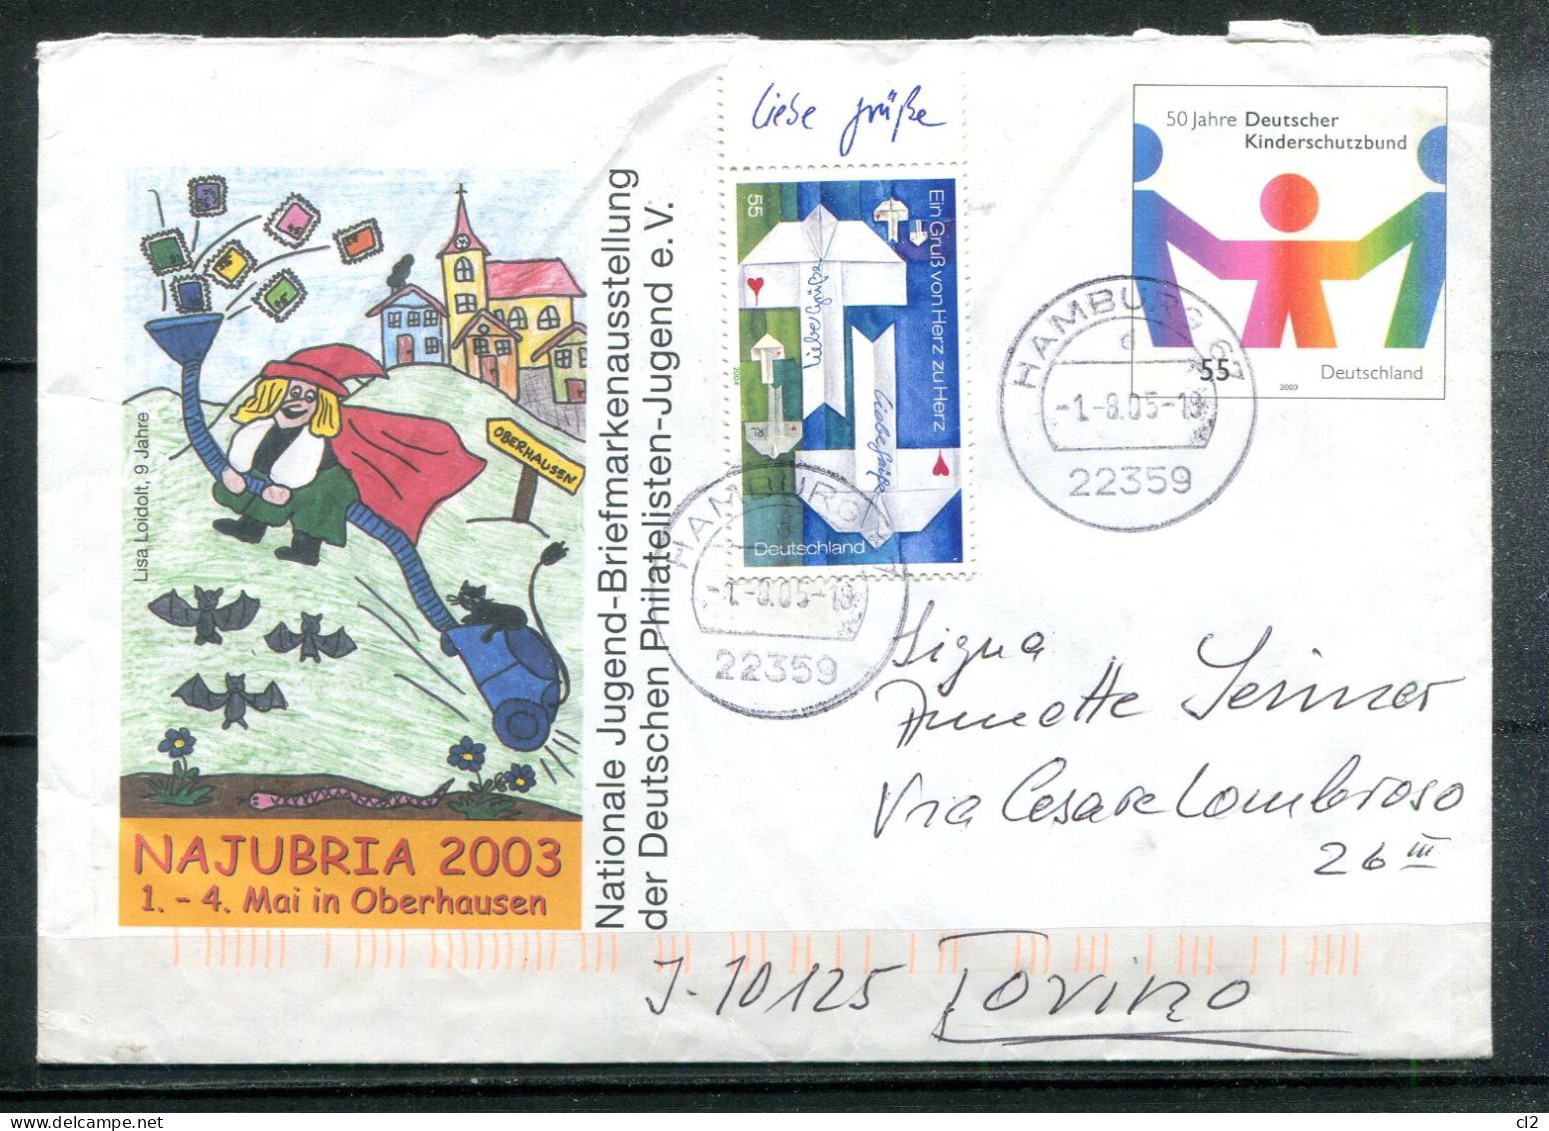 REPUBLIQUE FEDERALE ALLEMANDE - Ganzsache (Entier Postal) - Mi USo 57 (Najubria 2003 Oberhausen) - Umschläge - Gebraucht